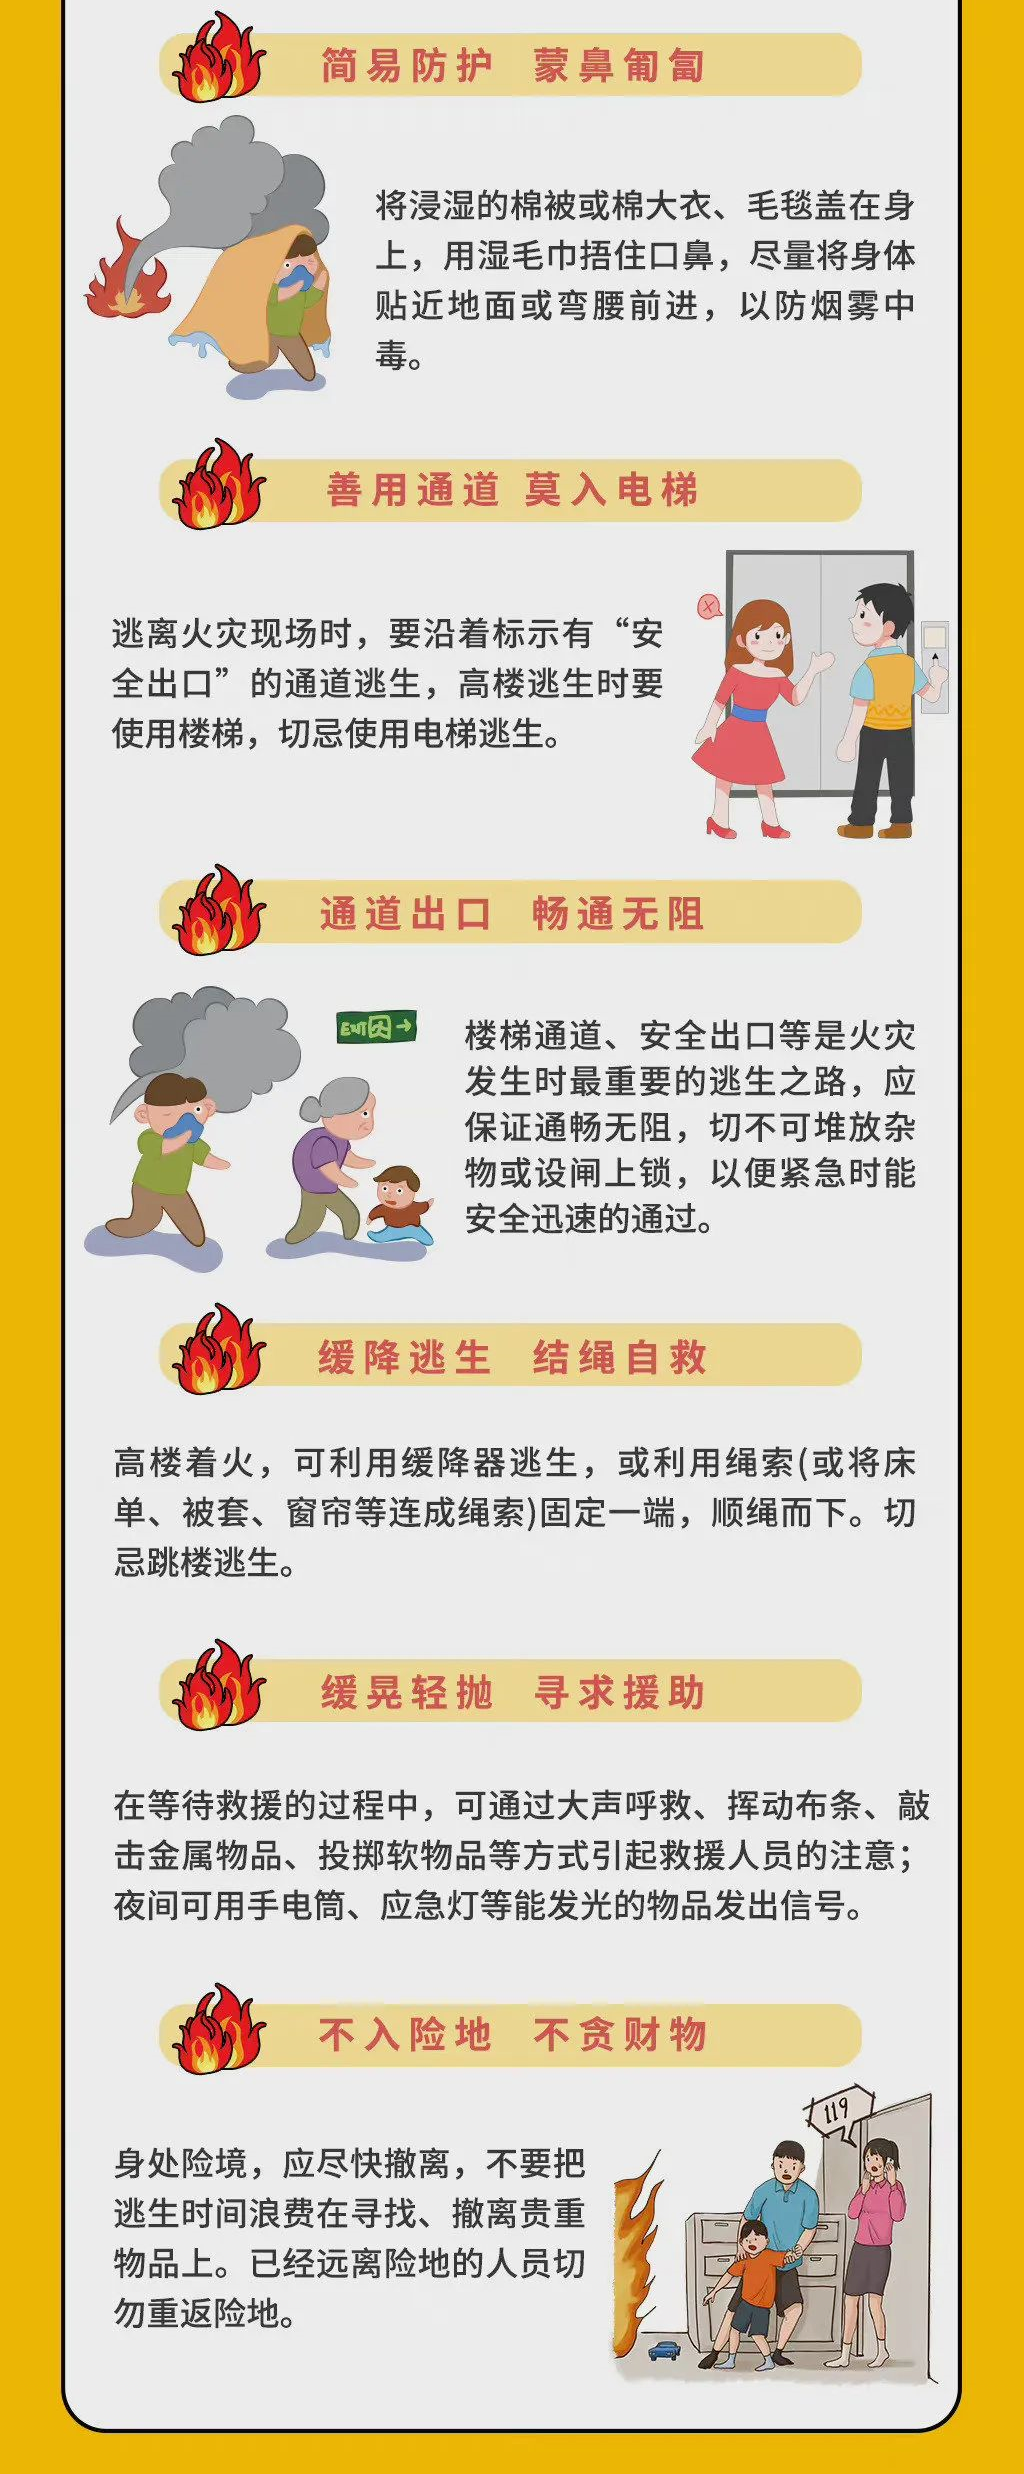 火灾是最经常、最普遍威胁公众安全的灾害之一。这些必备的消防知识，赶紧和孩子一起学习起来吧！